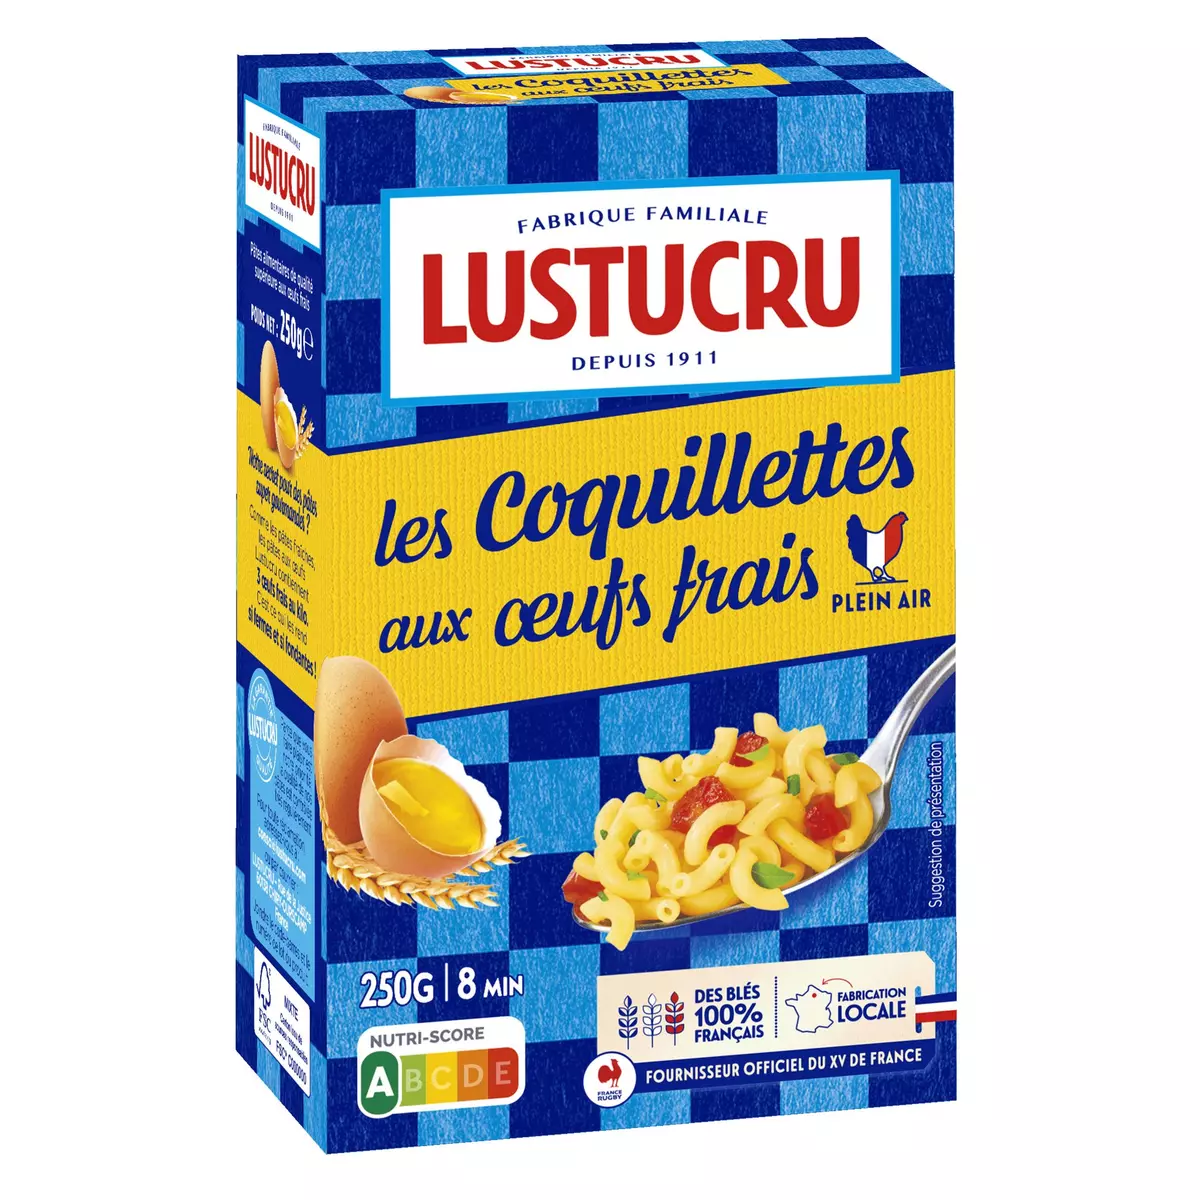 LUSTUCRU Coquillettes aux œufs frais blé français 500g